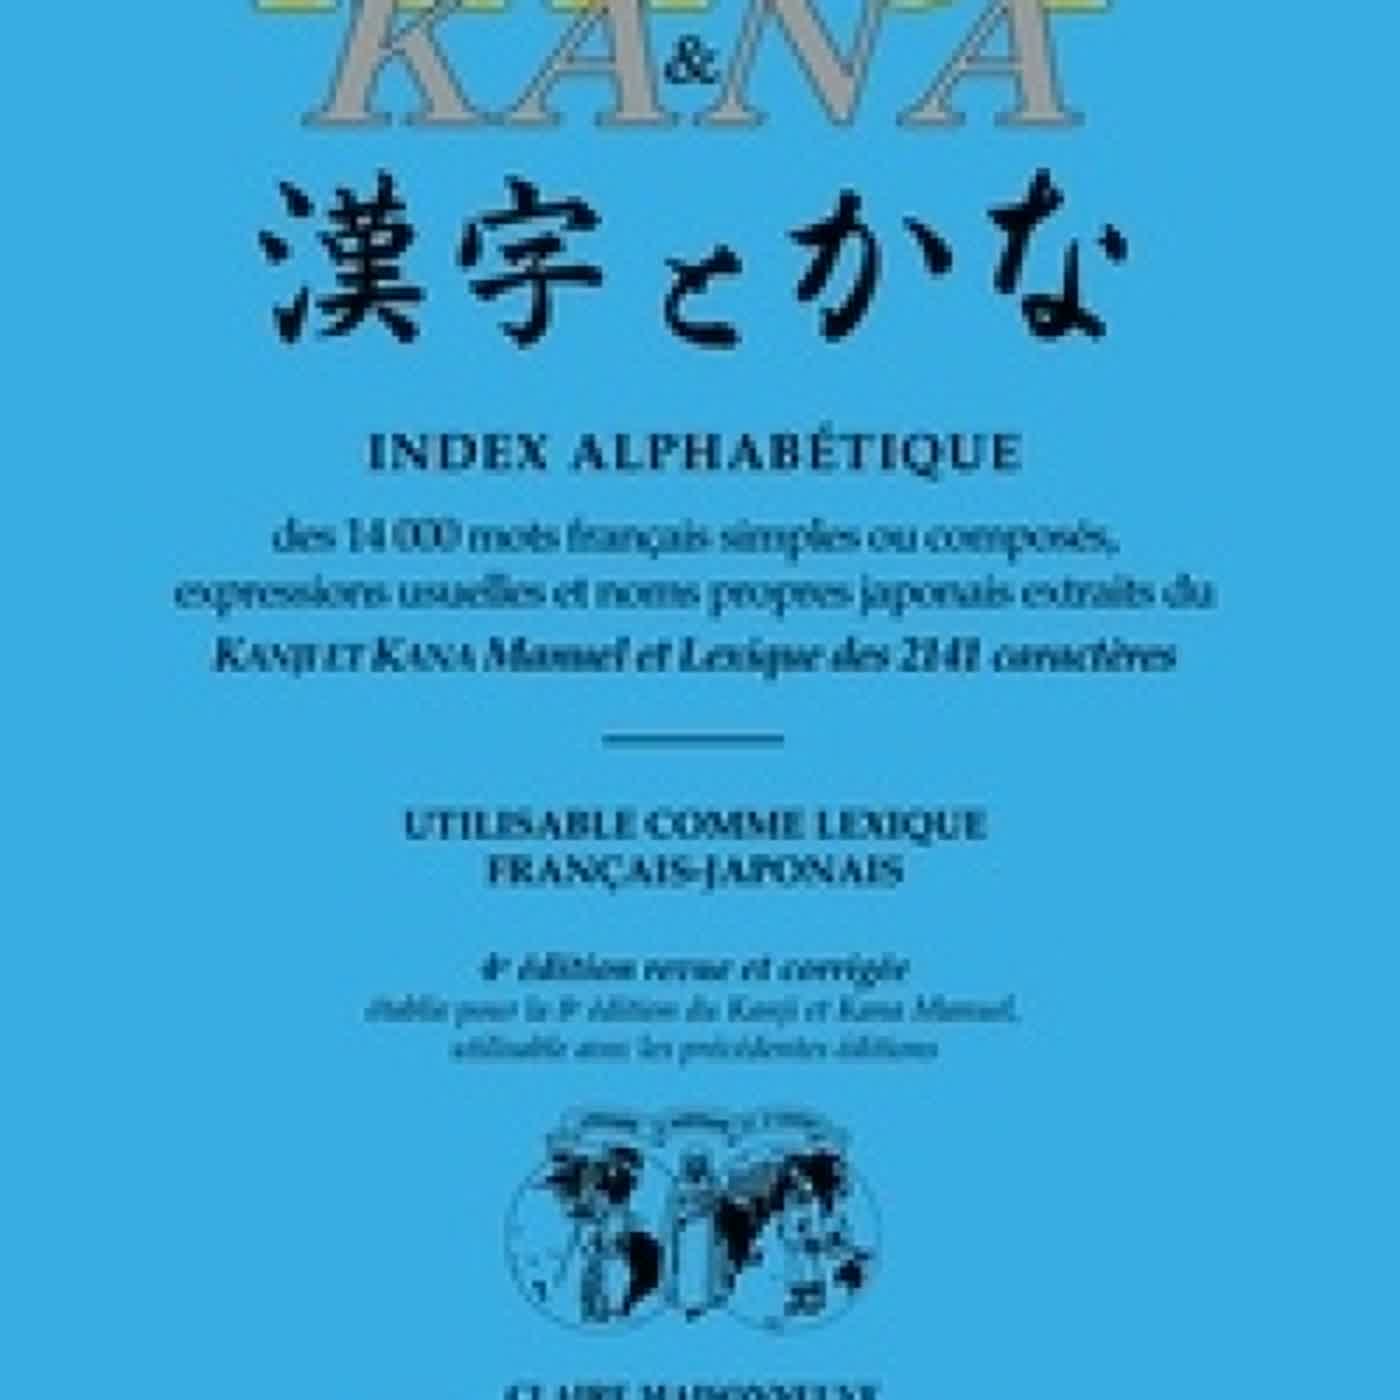 Read online: Kanji & Kana  - Index alphabétique des 14 000 mots français simples ou composés, expressions usuelles et noms propres japonais extraits du Kanji et Kana manuel et lexique des 2141 caractères